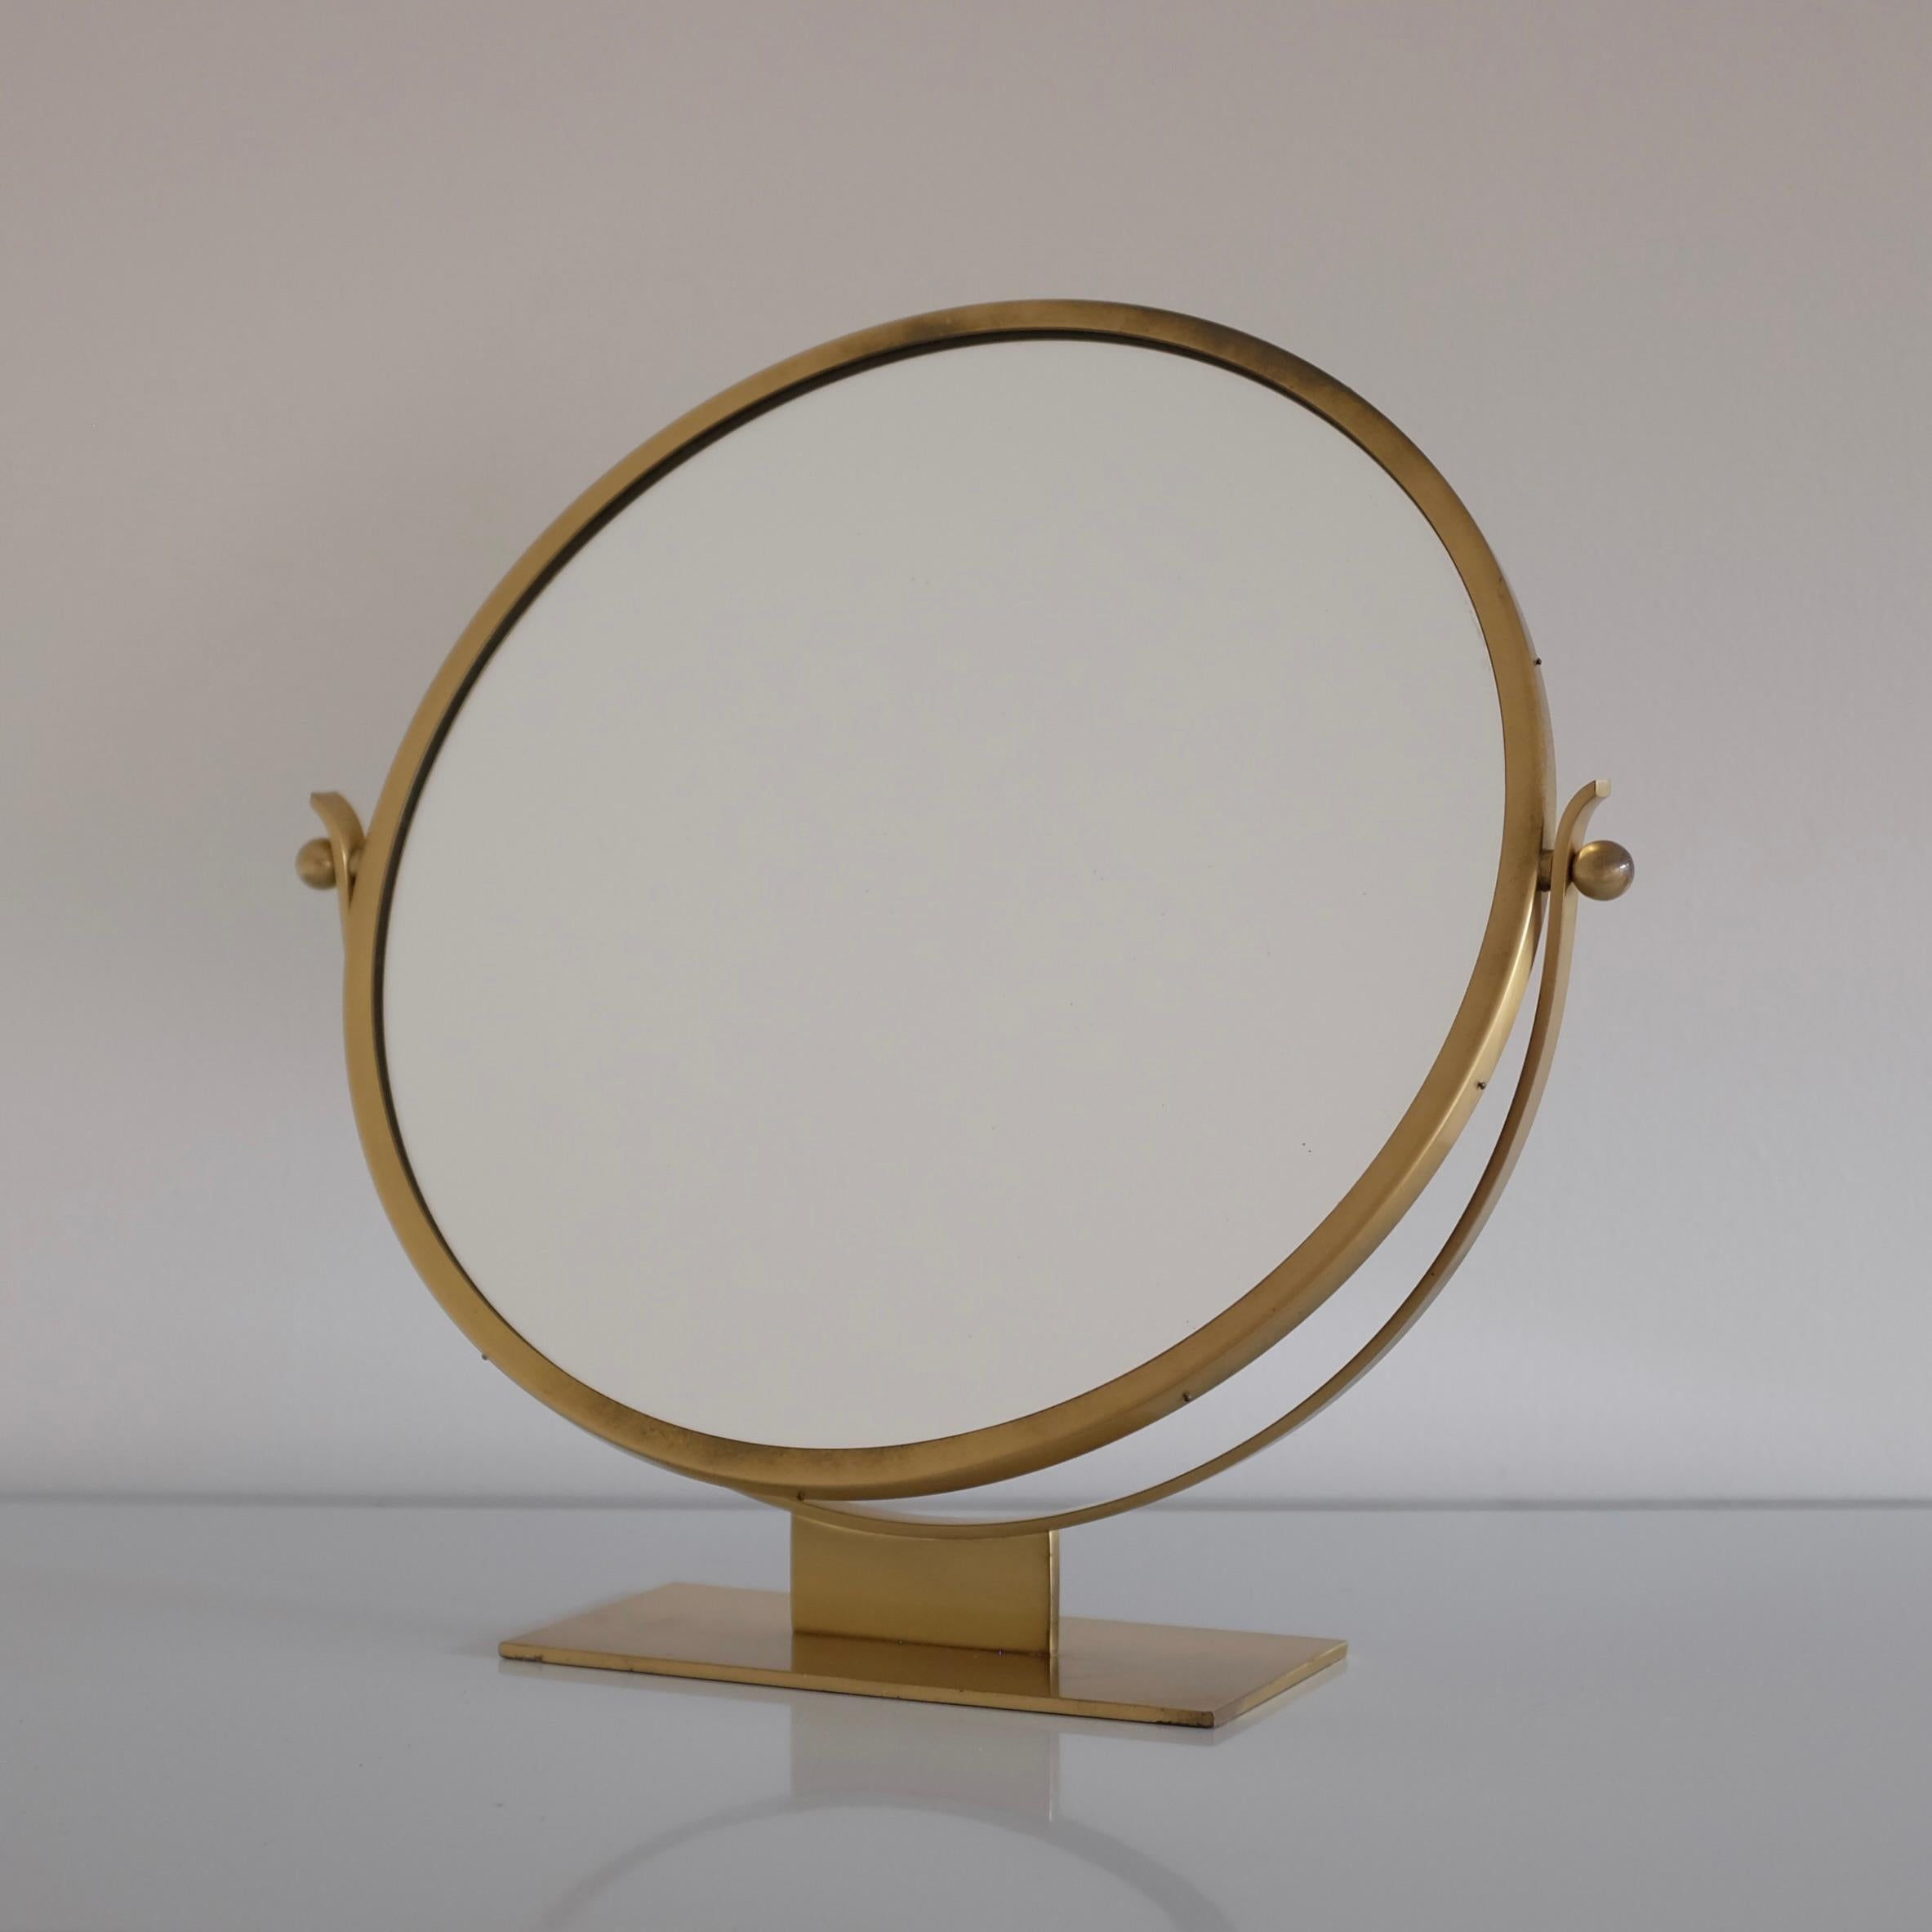 Magnifique miroir de table en laiton des années 1940/50 par Ystad-Metall, Suède. La base et le cadre en laiton avec un teck au dos du miroir sont très décoratifs dans leur conception simple et élégante. Usure due à l'âge avec quelques petites